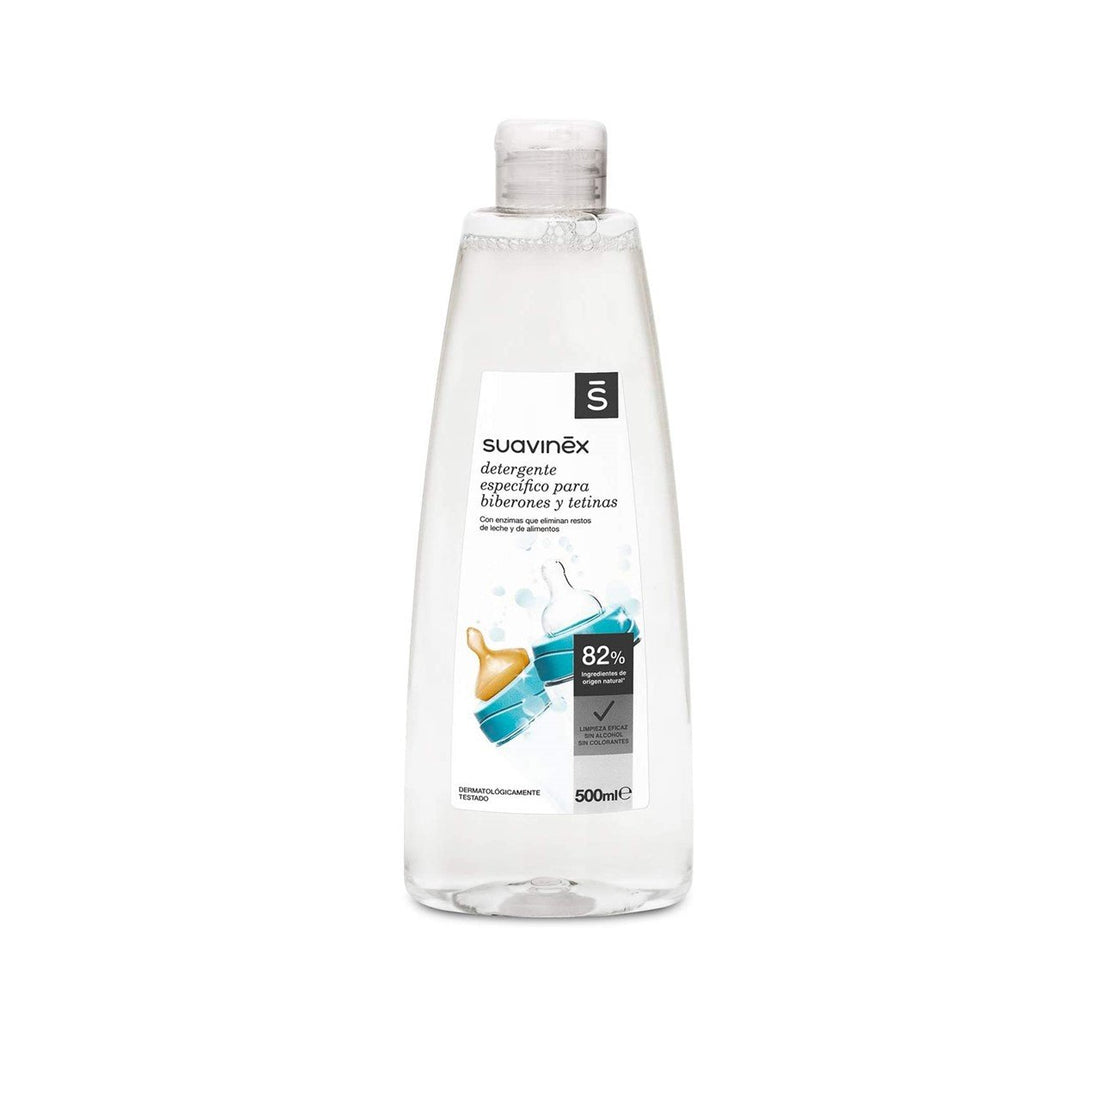 Suavinex Detergente Específico para Biberões e Tetinas 500ml (16.91fl oz)